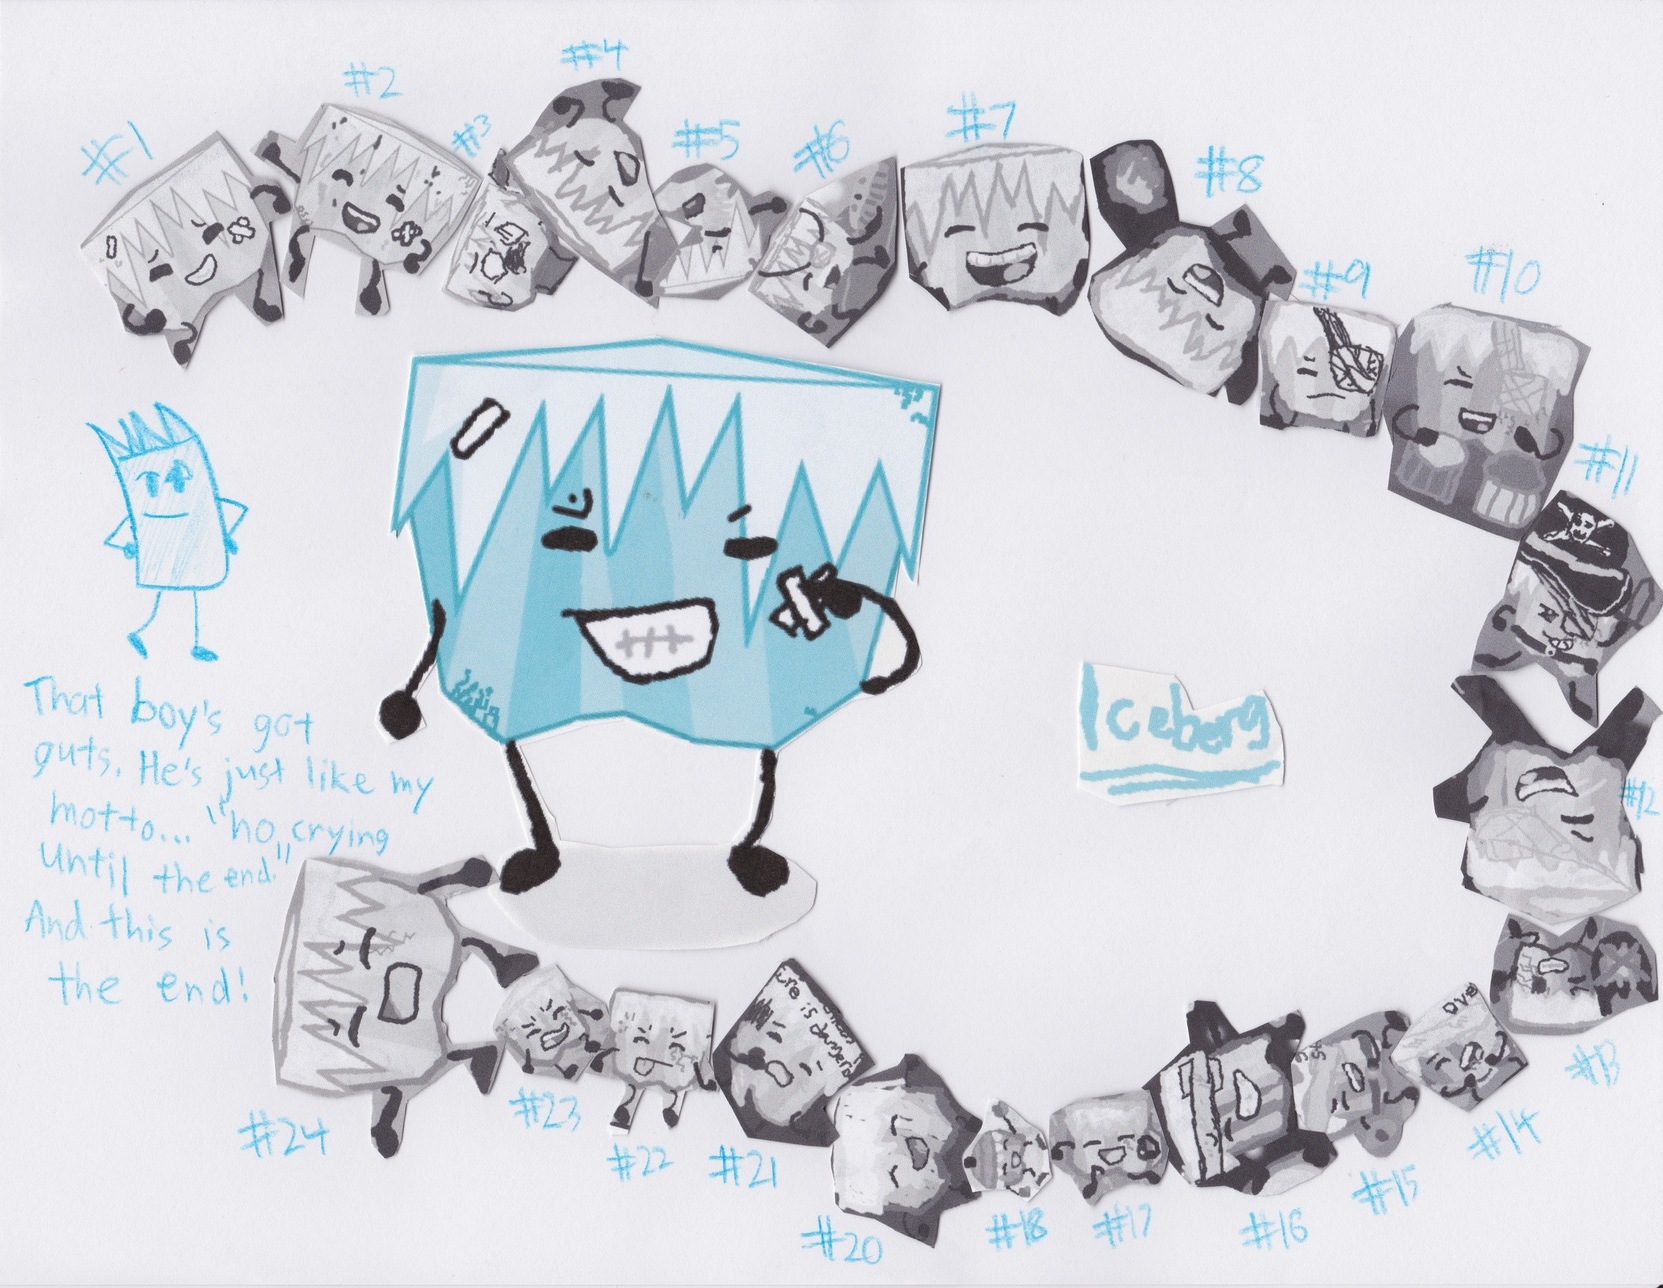 The BFDI Characters Iceberg